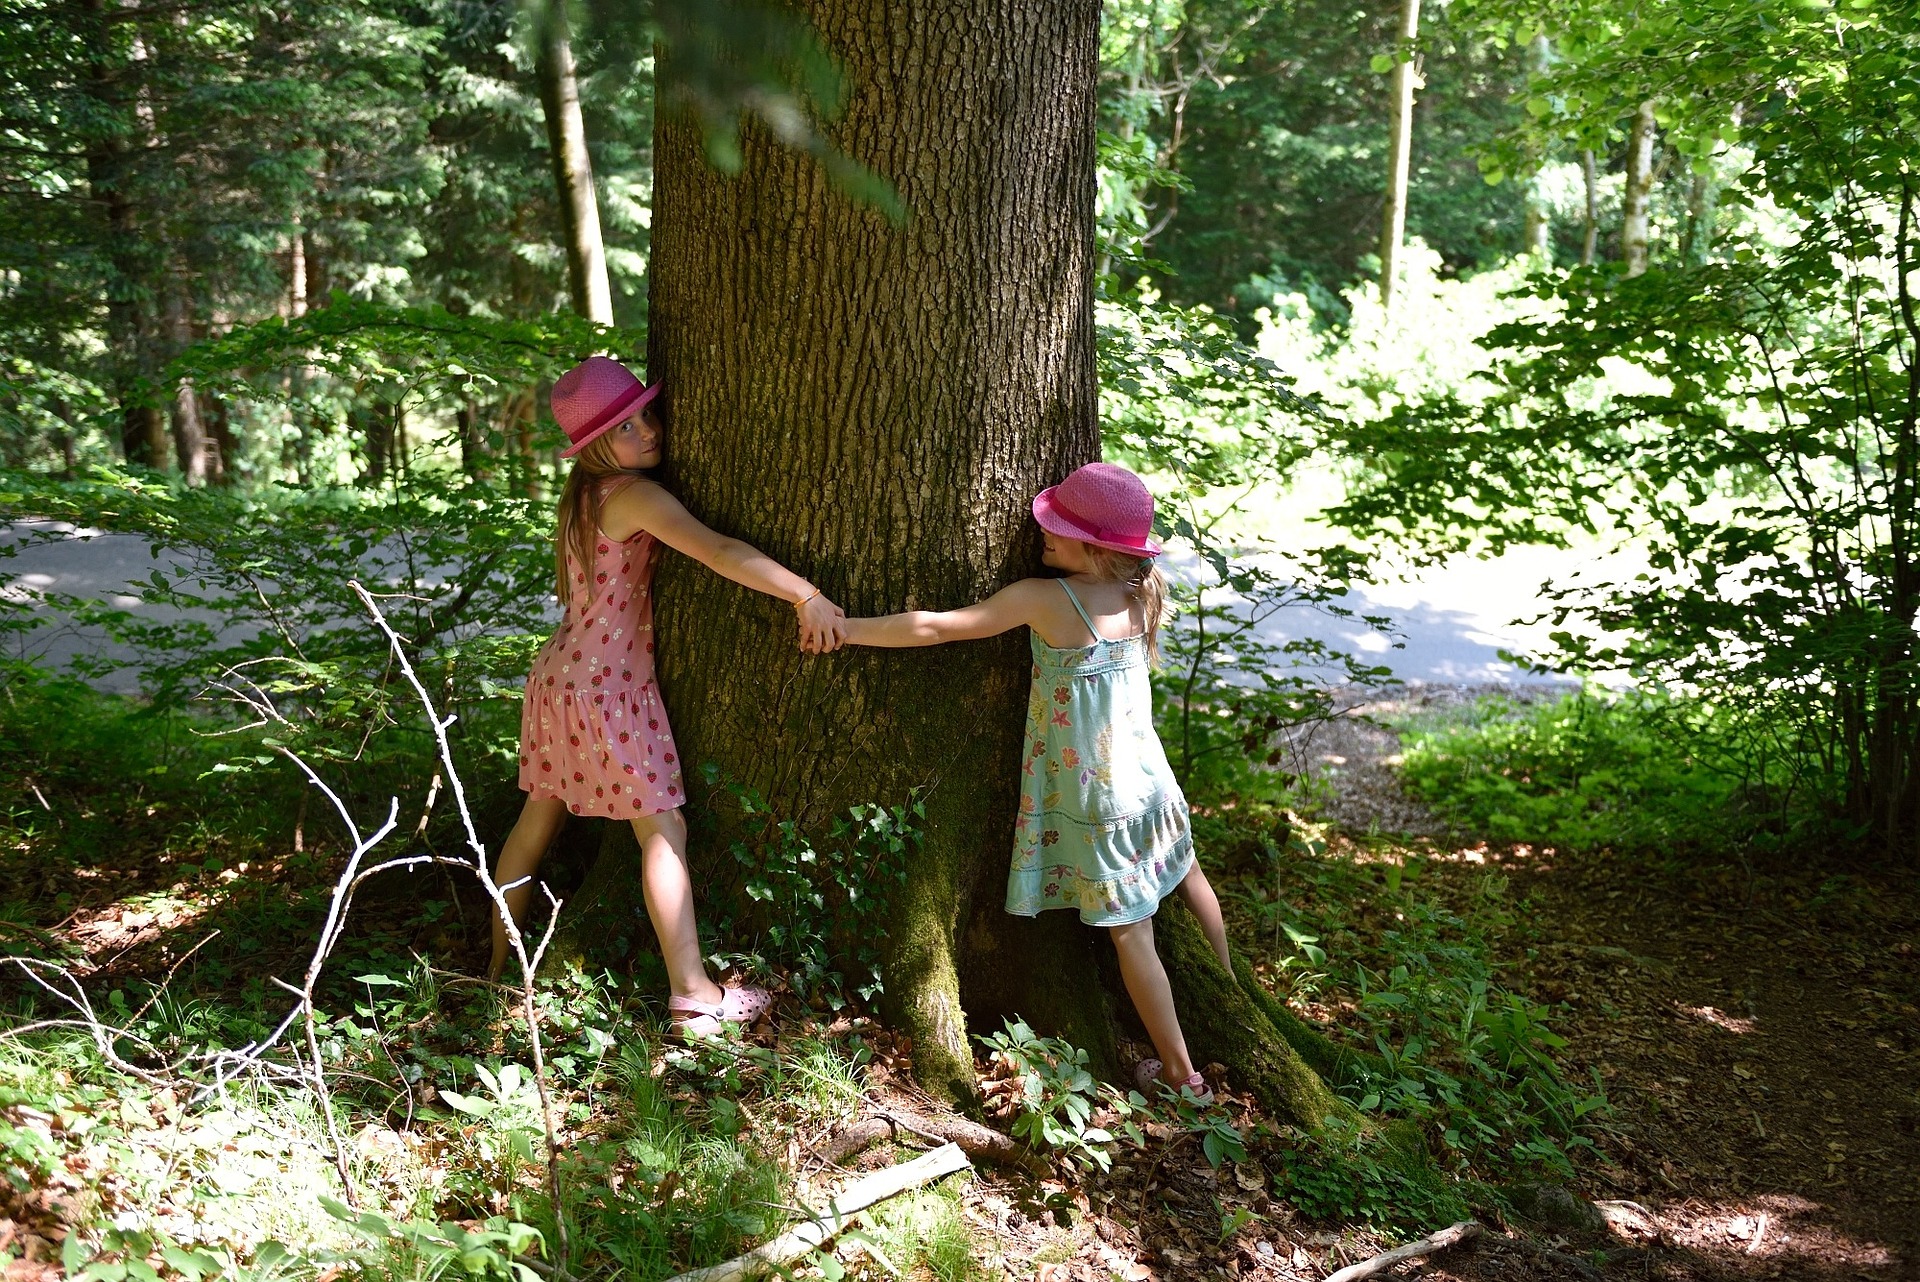 Calin arbre, tree hugging